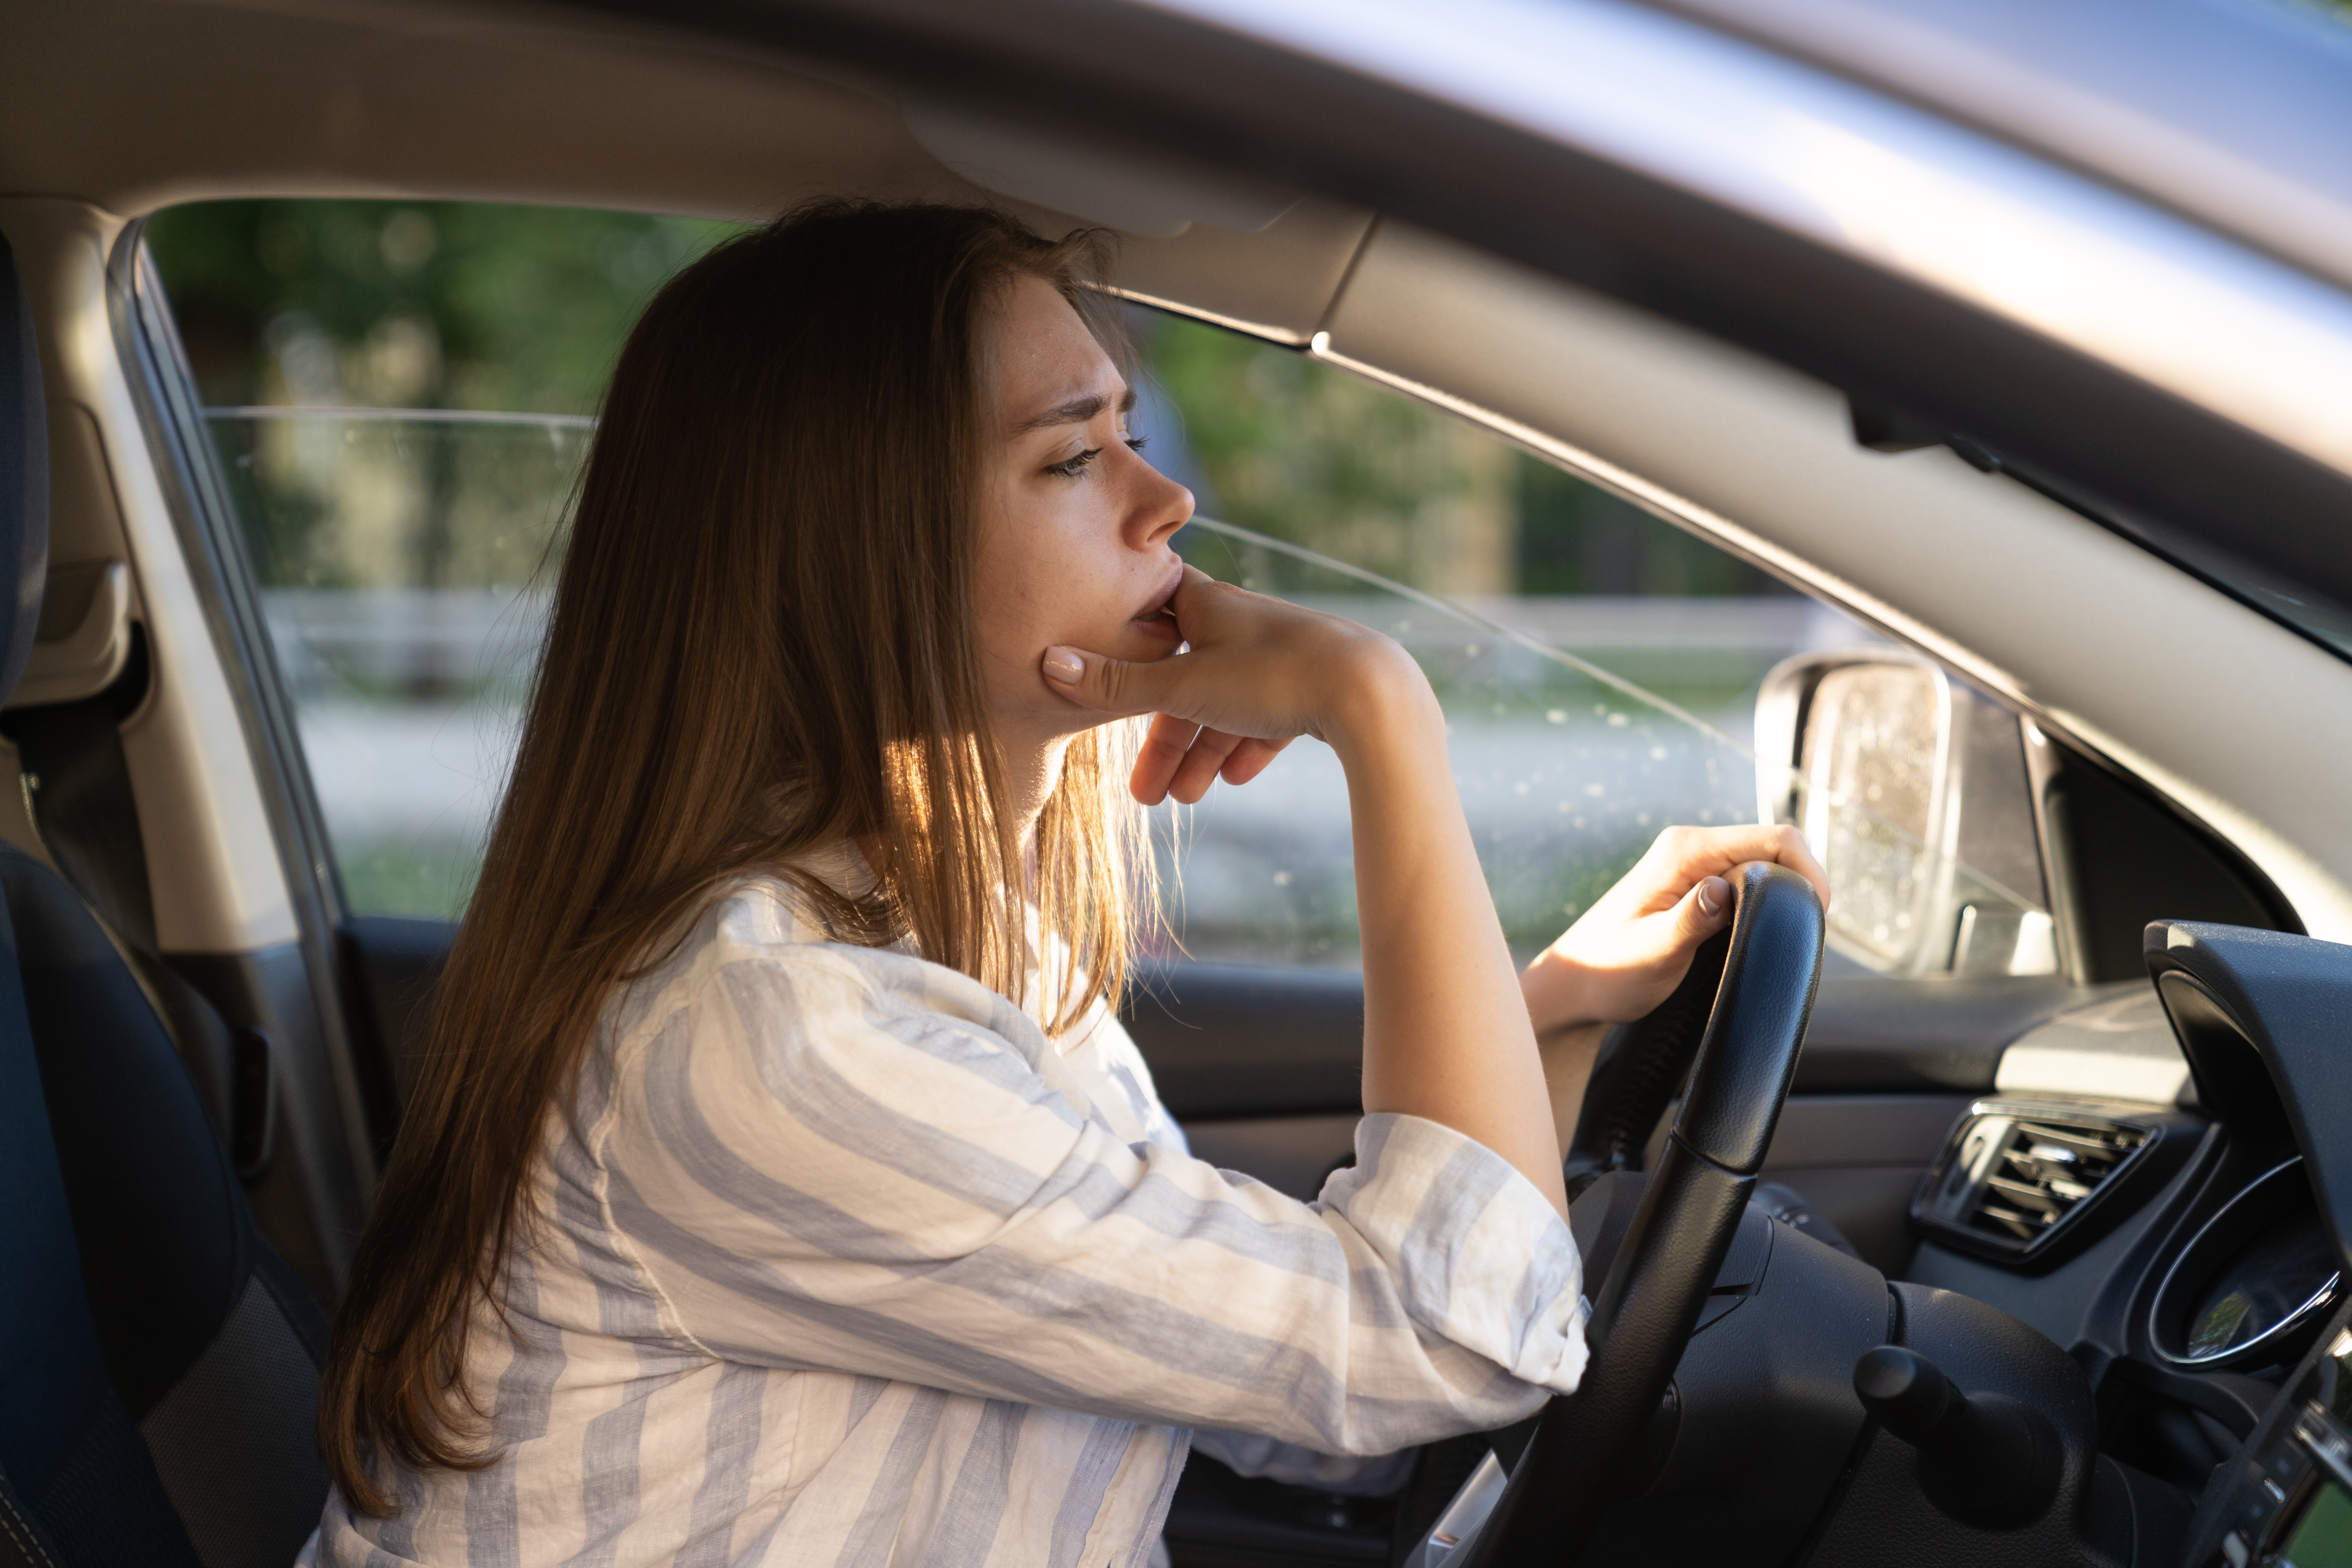 Eine junge Frau, die beim Autofahren in ihren Gedanken versunken ist | Quelle: Shutterstock